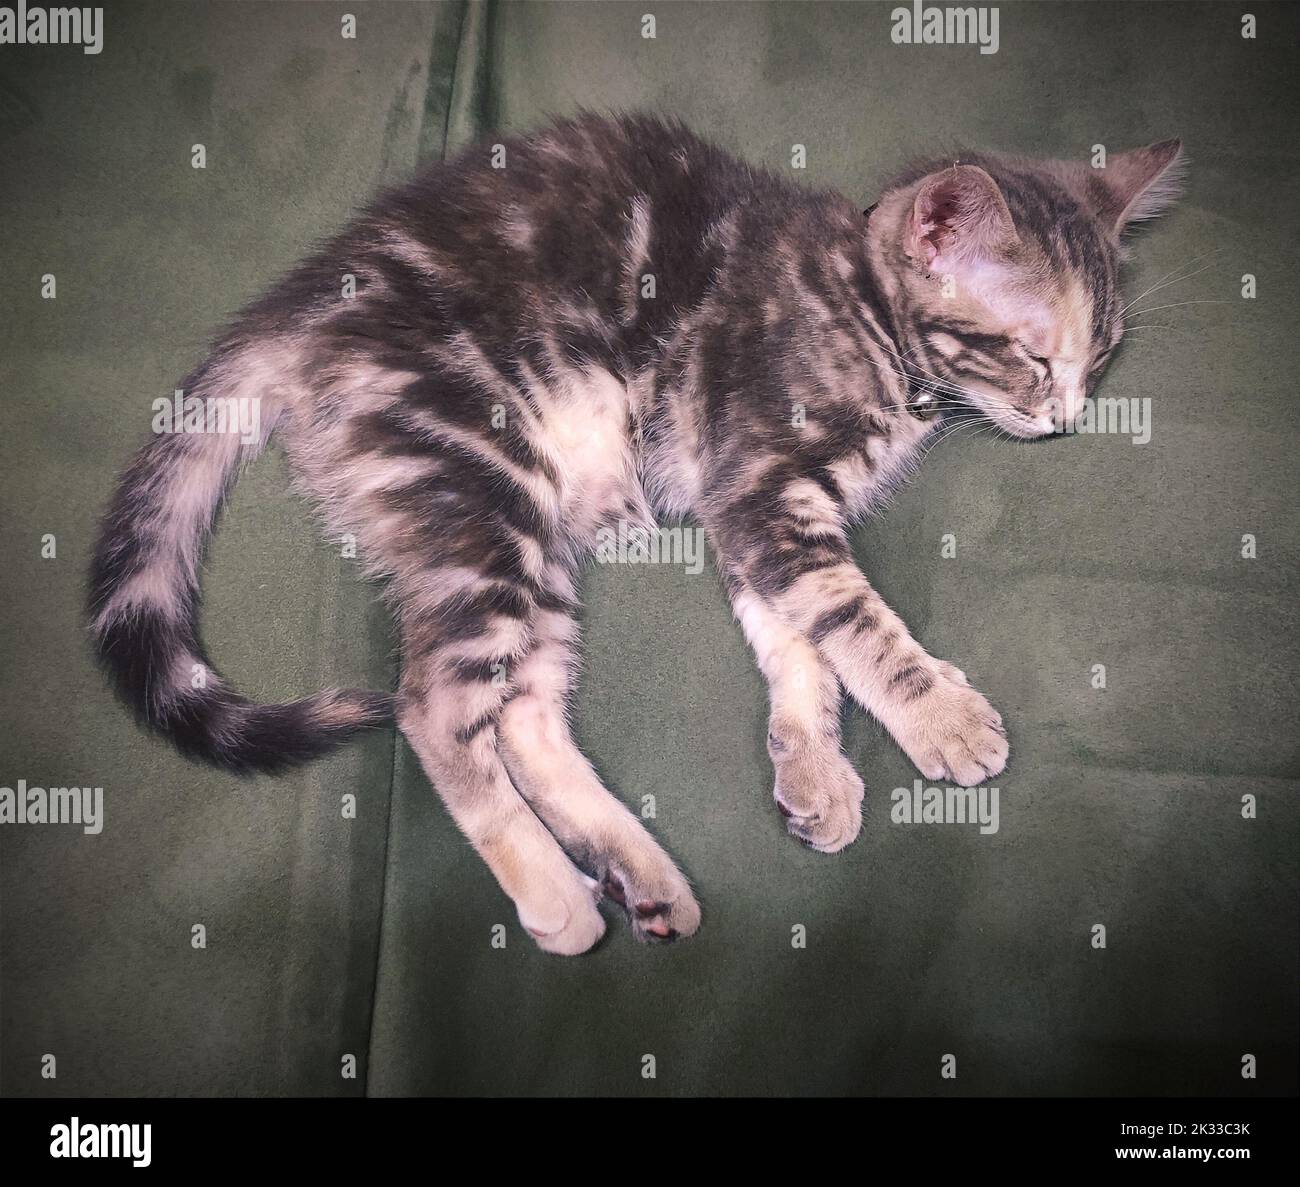 Small kitten sleeping on the sofa Stock Photo